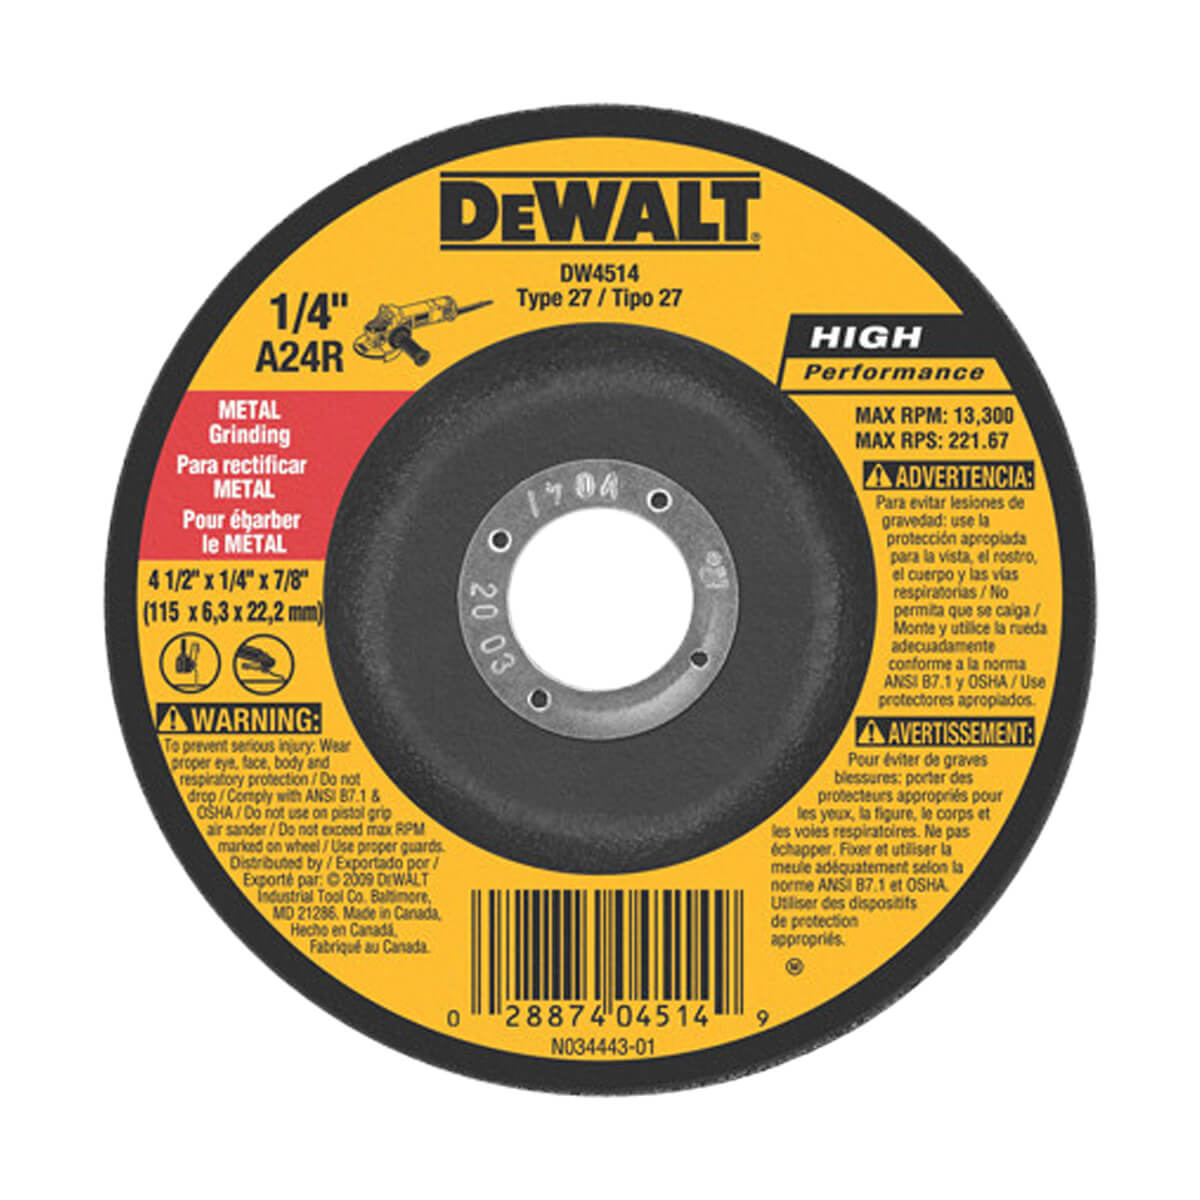 DEWALT General Purpose Metal Grinding Wheel - 7-in x 1/4-in x 7/8-in